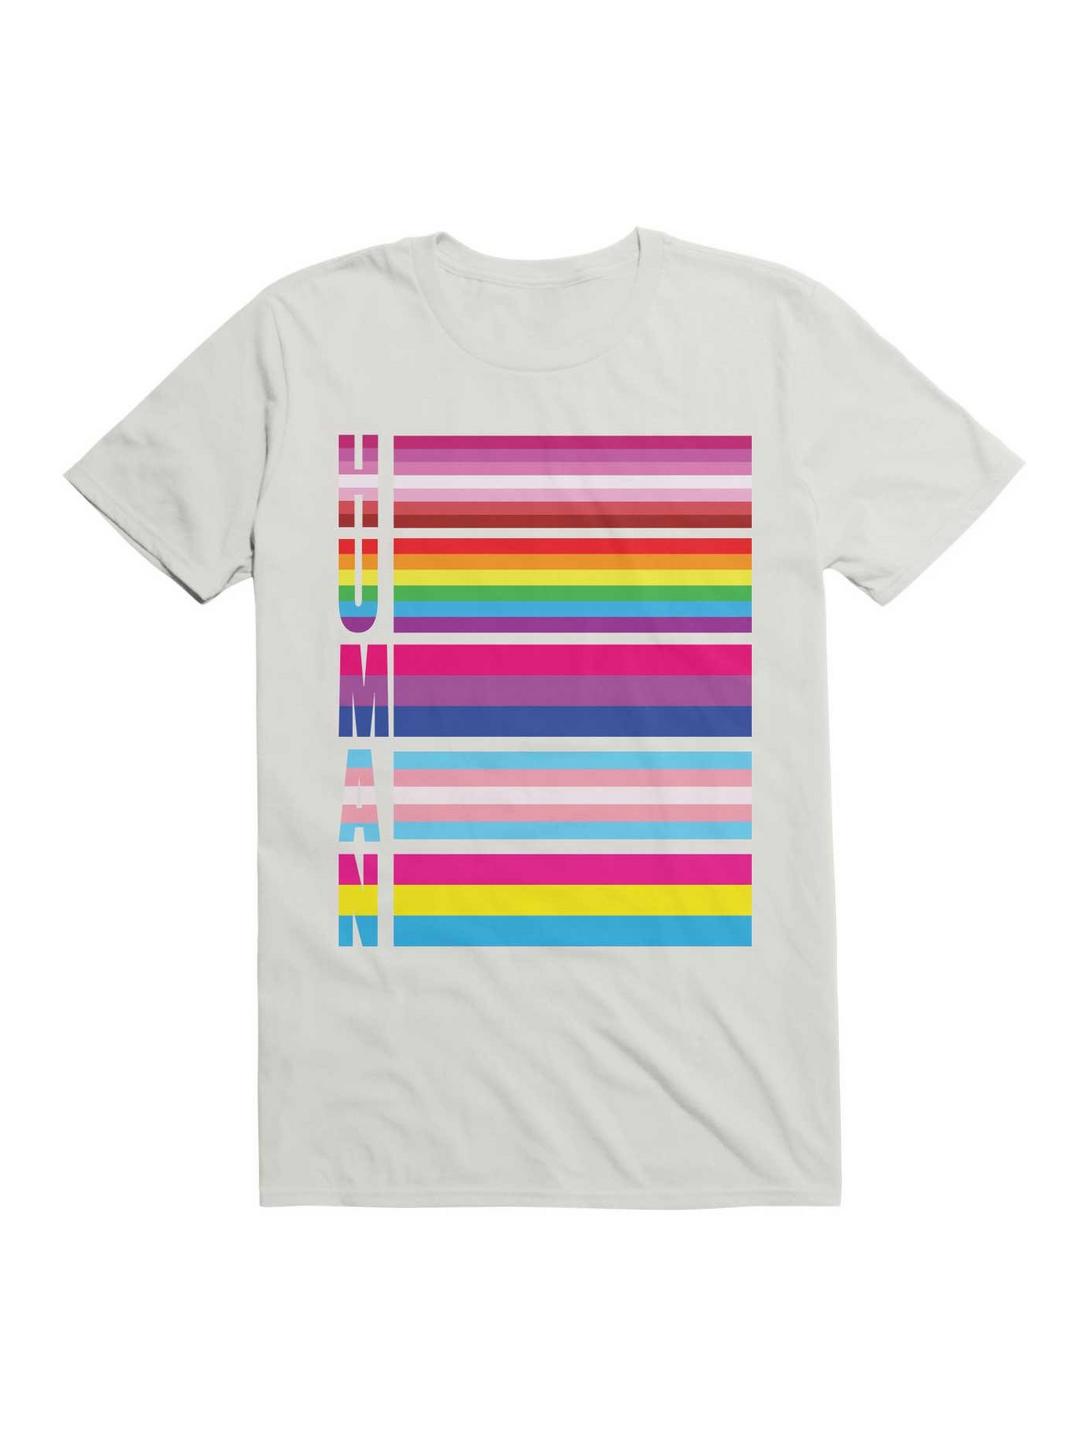 Human LGBT Flags T-Shirt, , hi-res